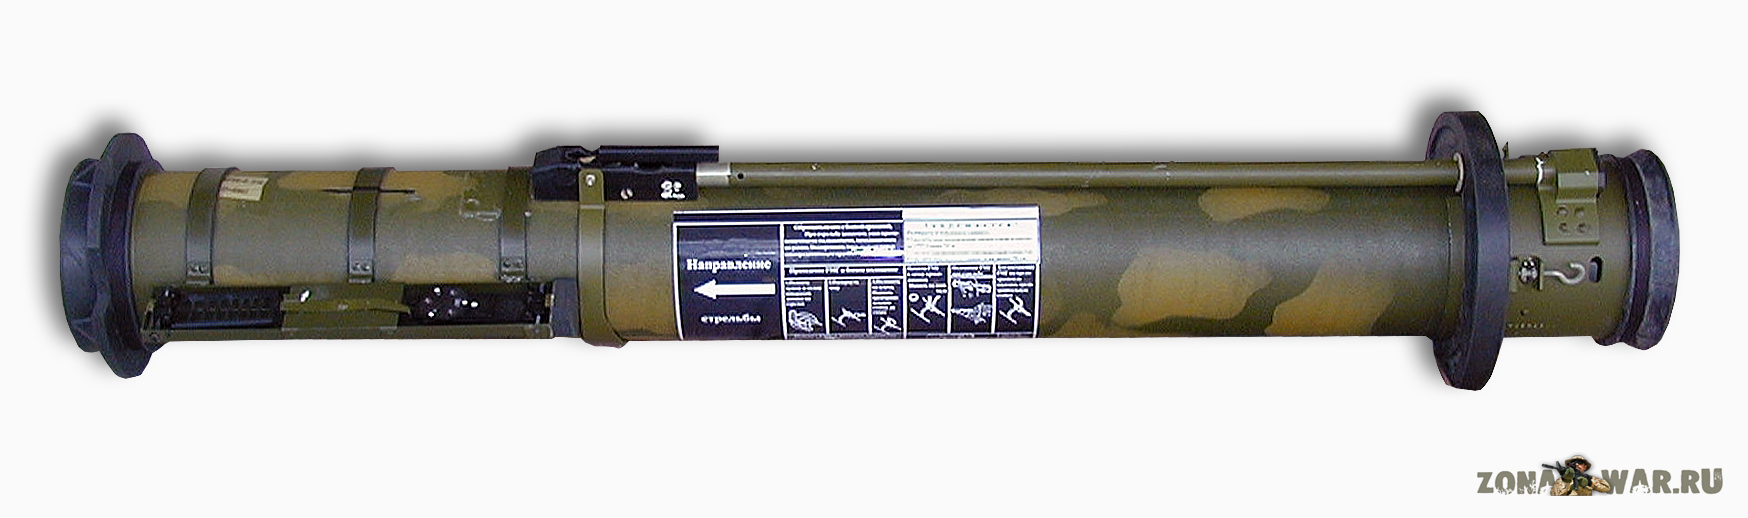 RShG-1 multi-purpose rocket weapon